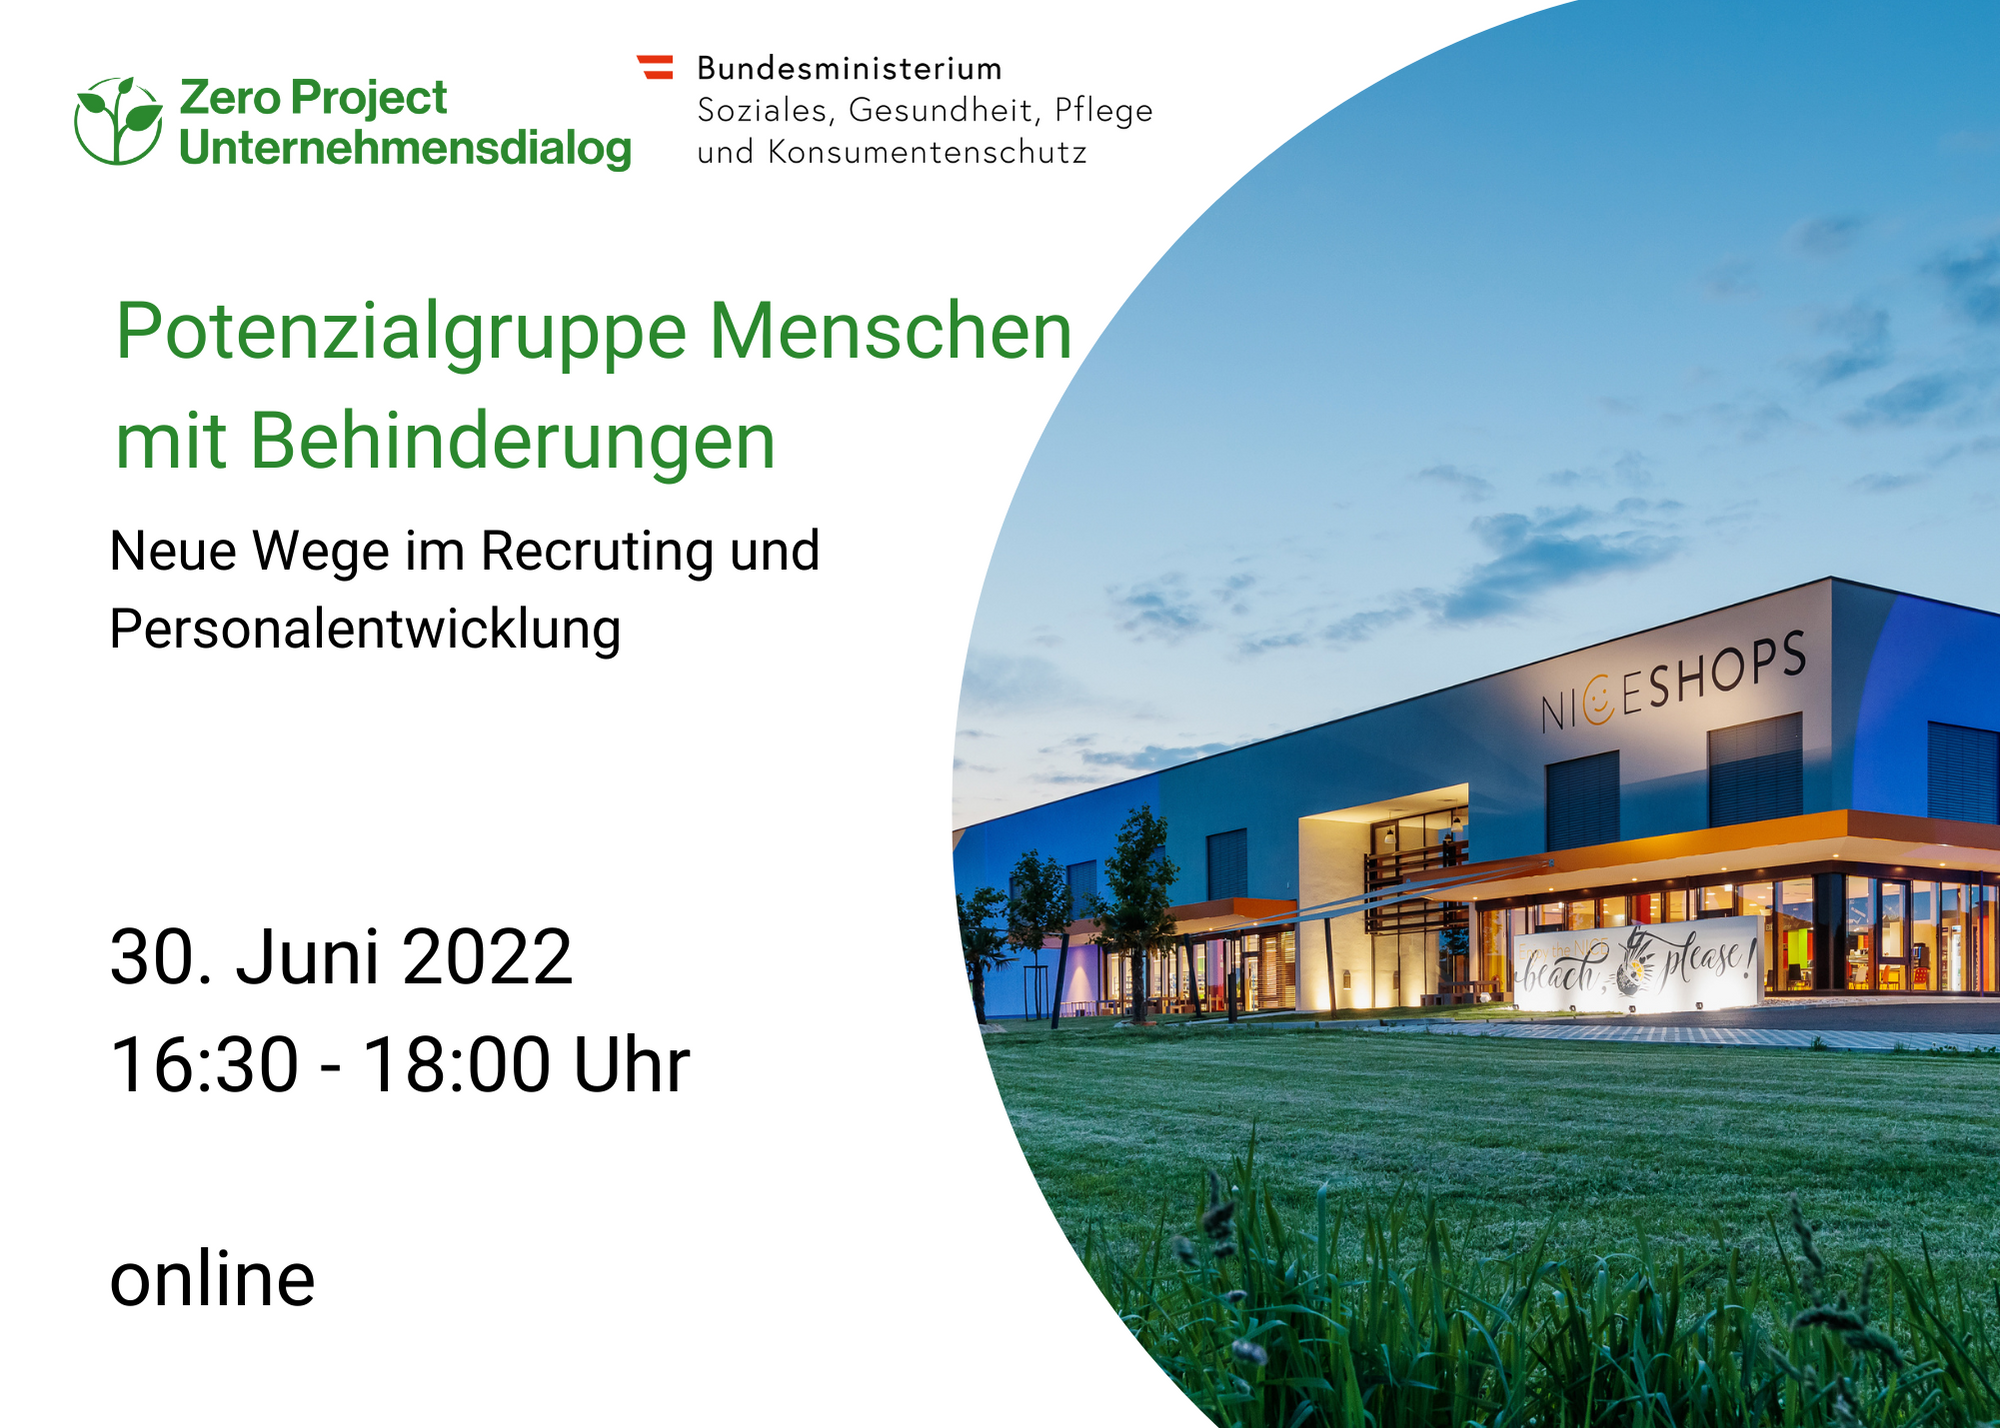 Zero Project Unternehmensdialog in der Steiermark: 30.6. 16:30-18:00 Uhr online